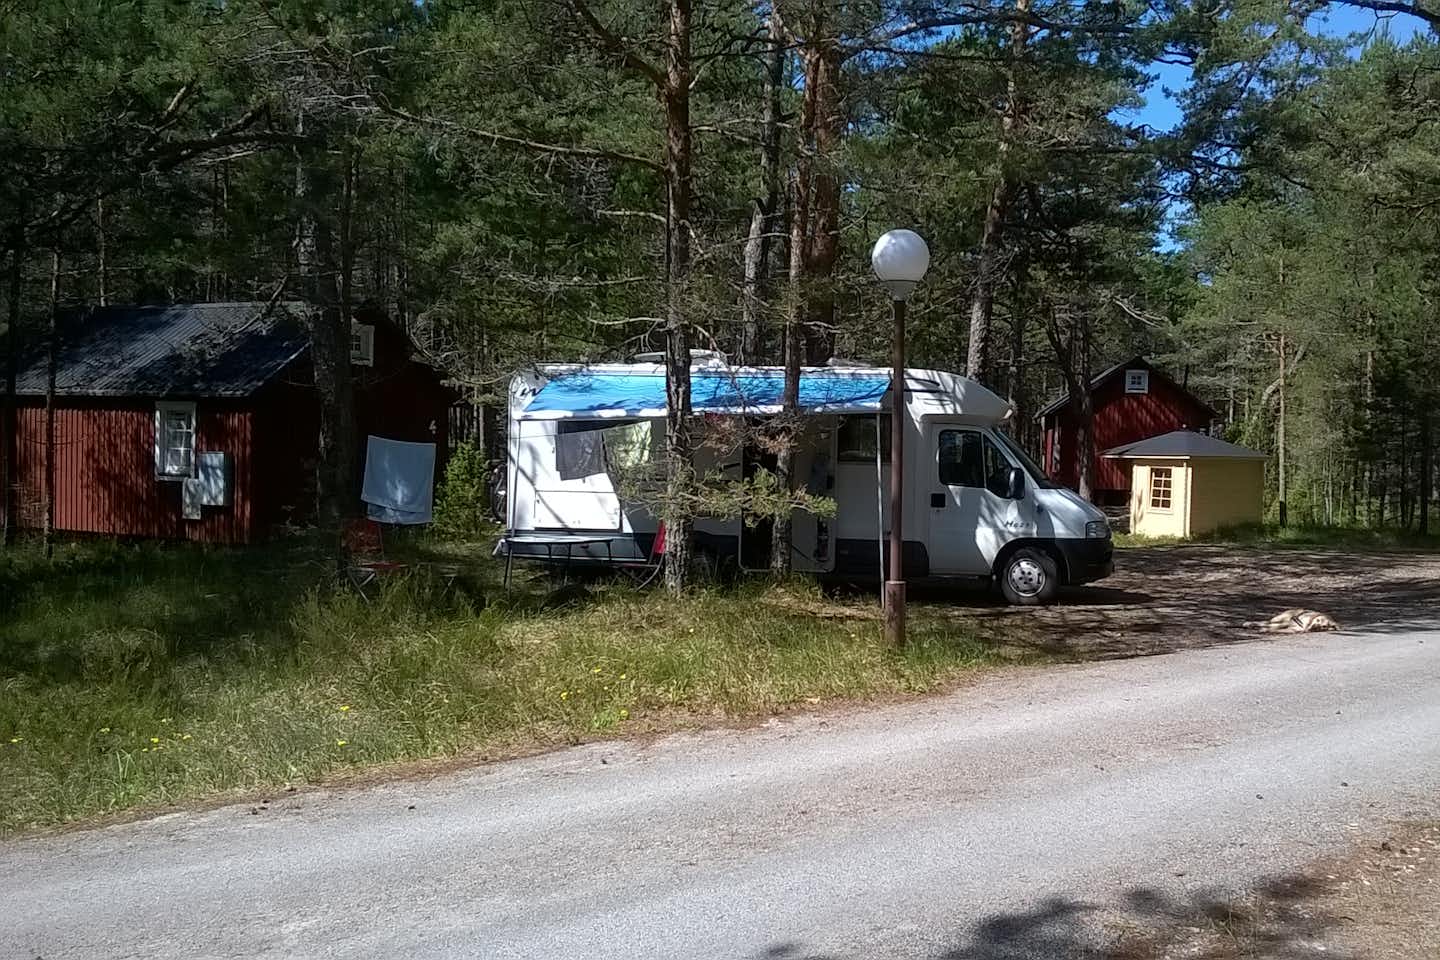 Roosta Erholungsdorf - Wohnwagen und Mobilheime zwischen Bäumen auf dem Campingplatz